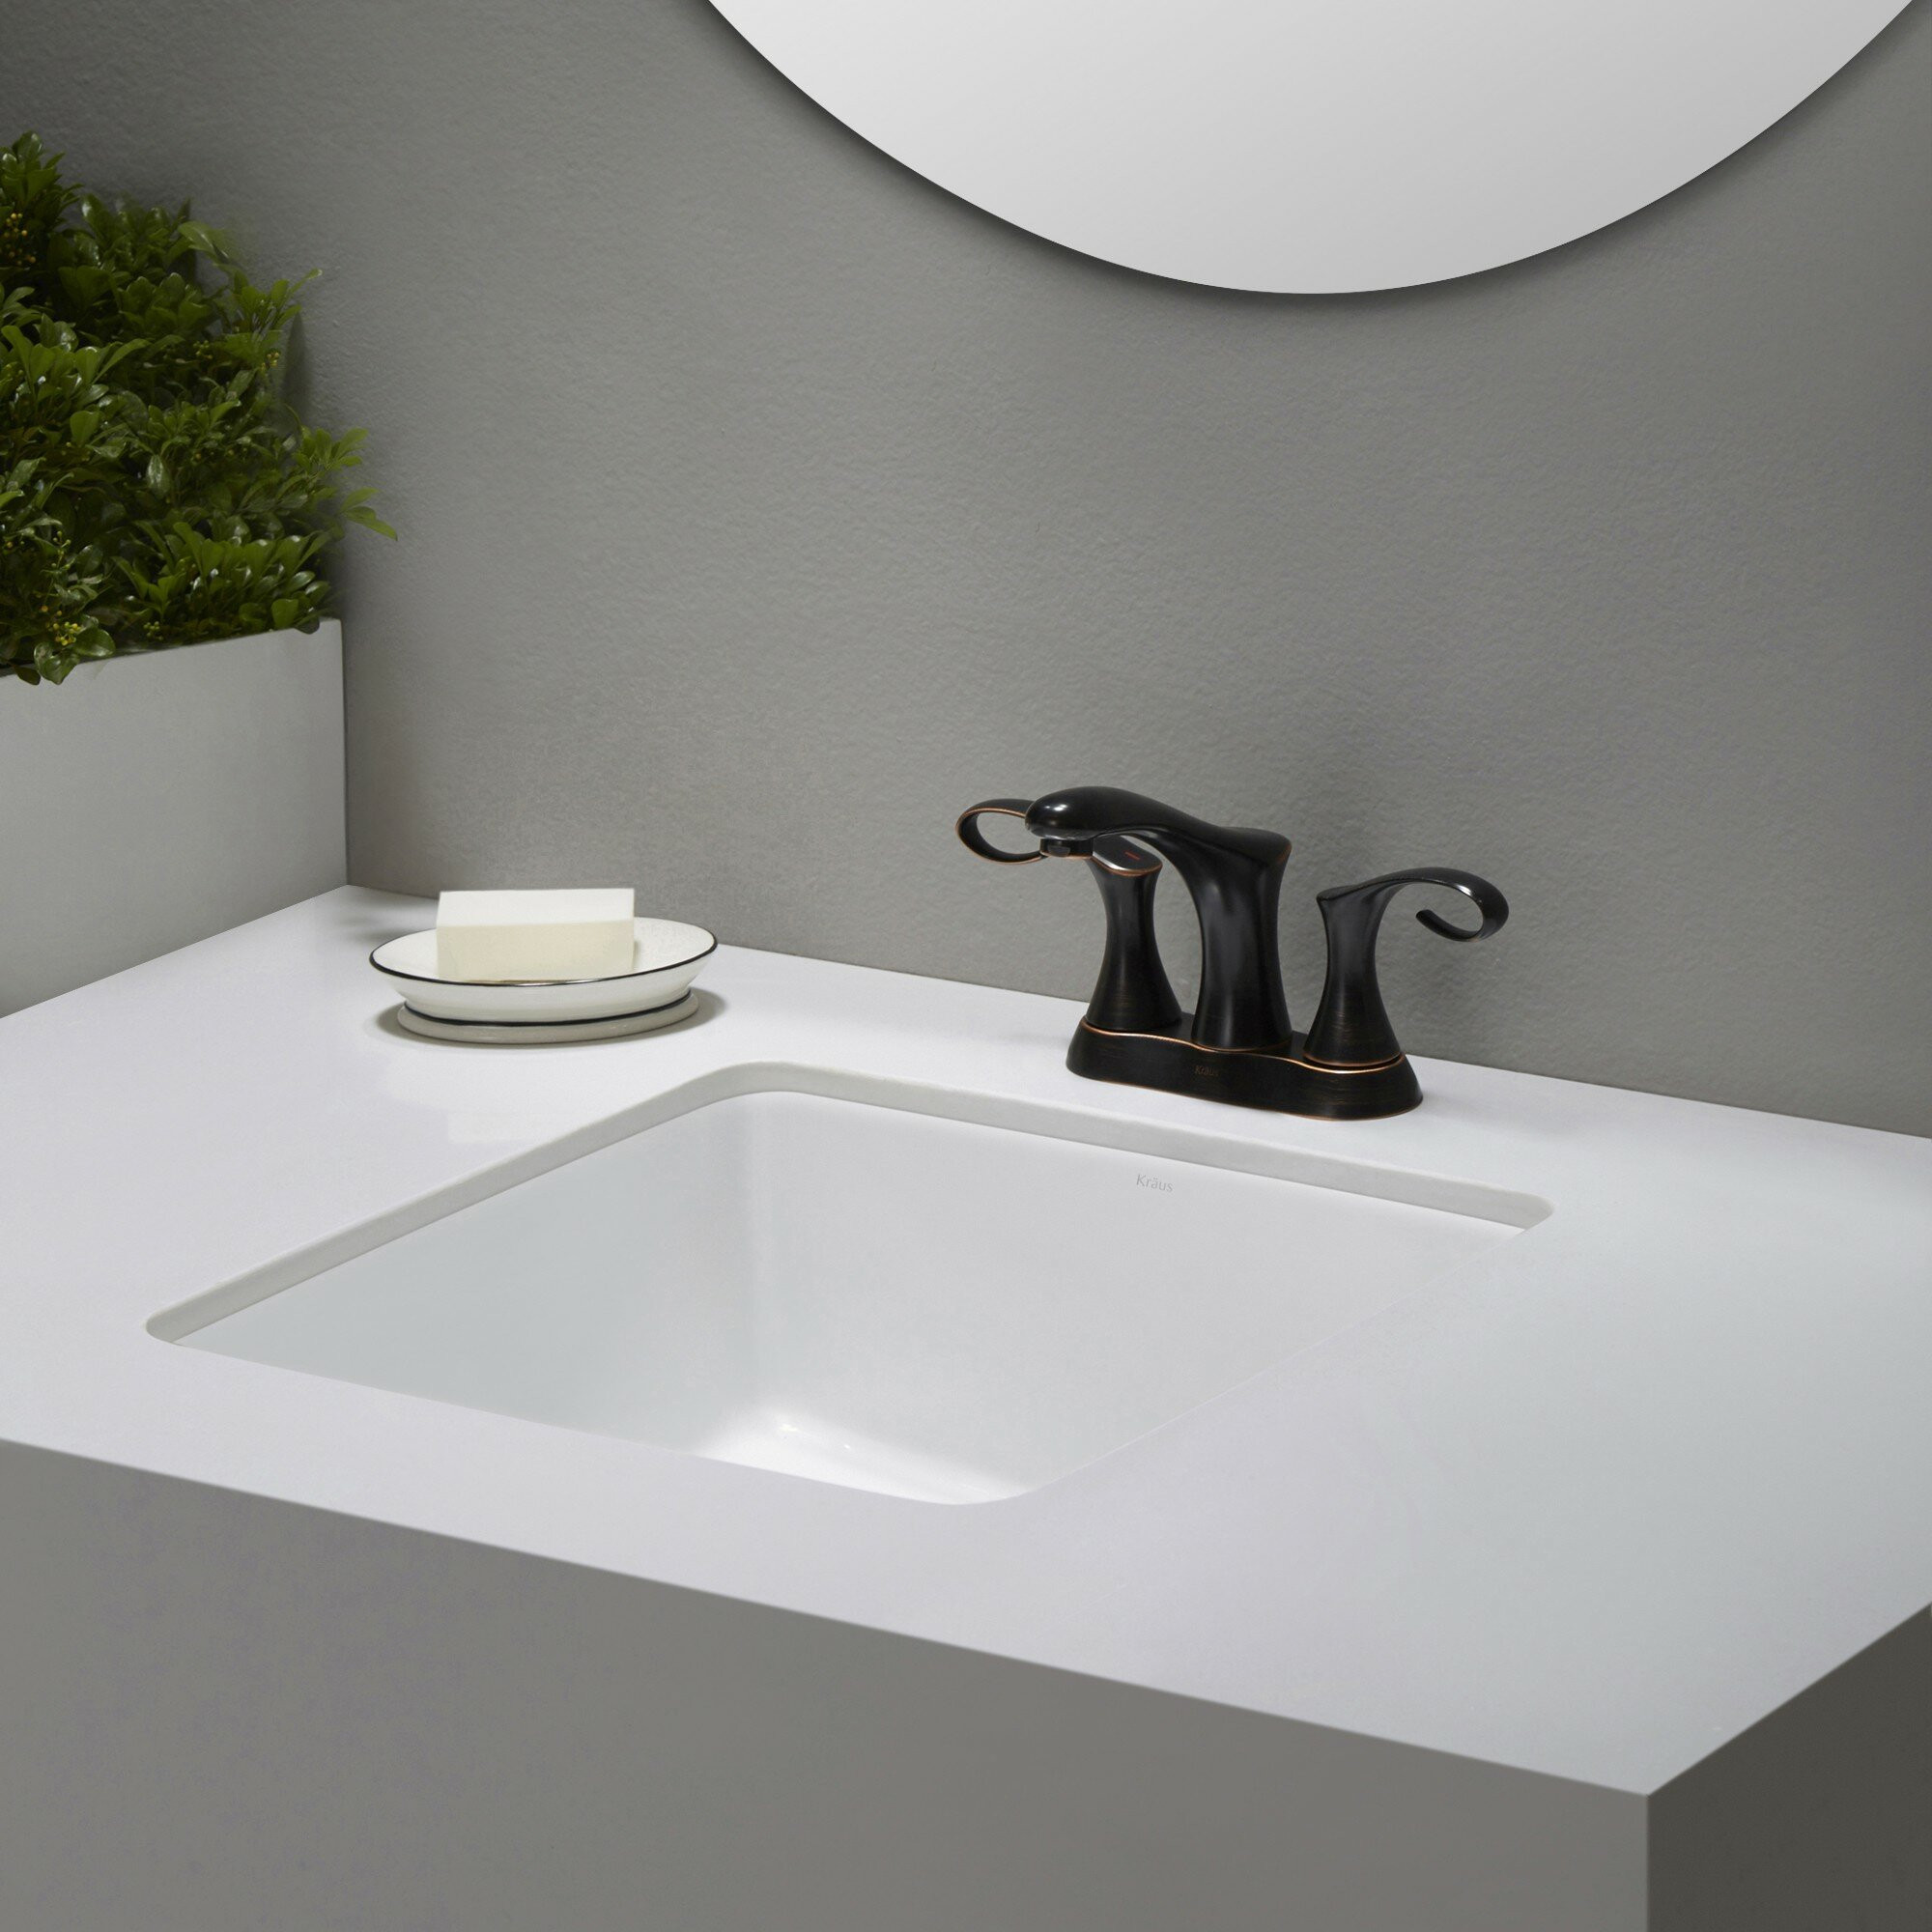 Bathroom Sinks Undermount
 Elavo™ Ceramic Square Undermount Bathroom Sink with